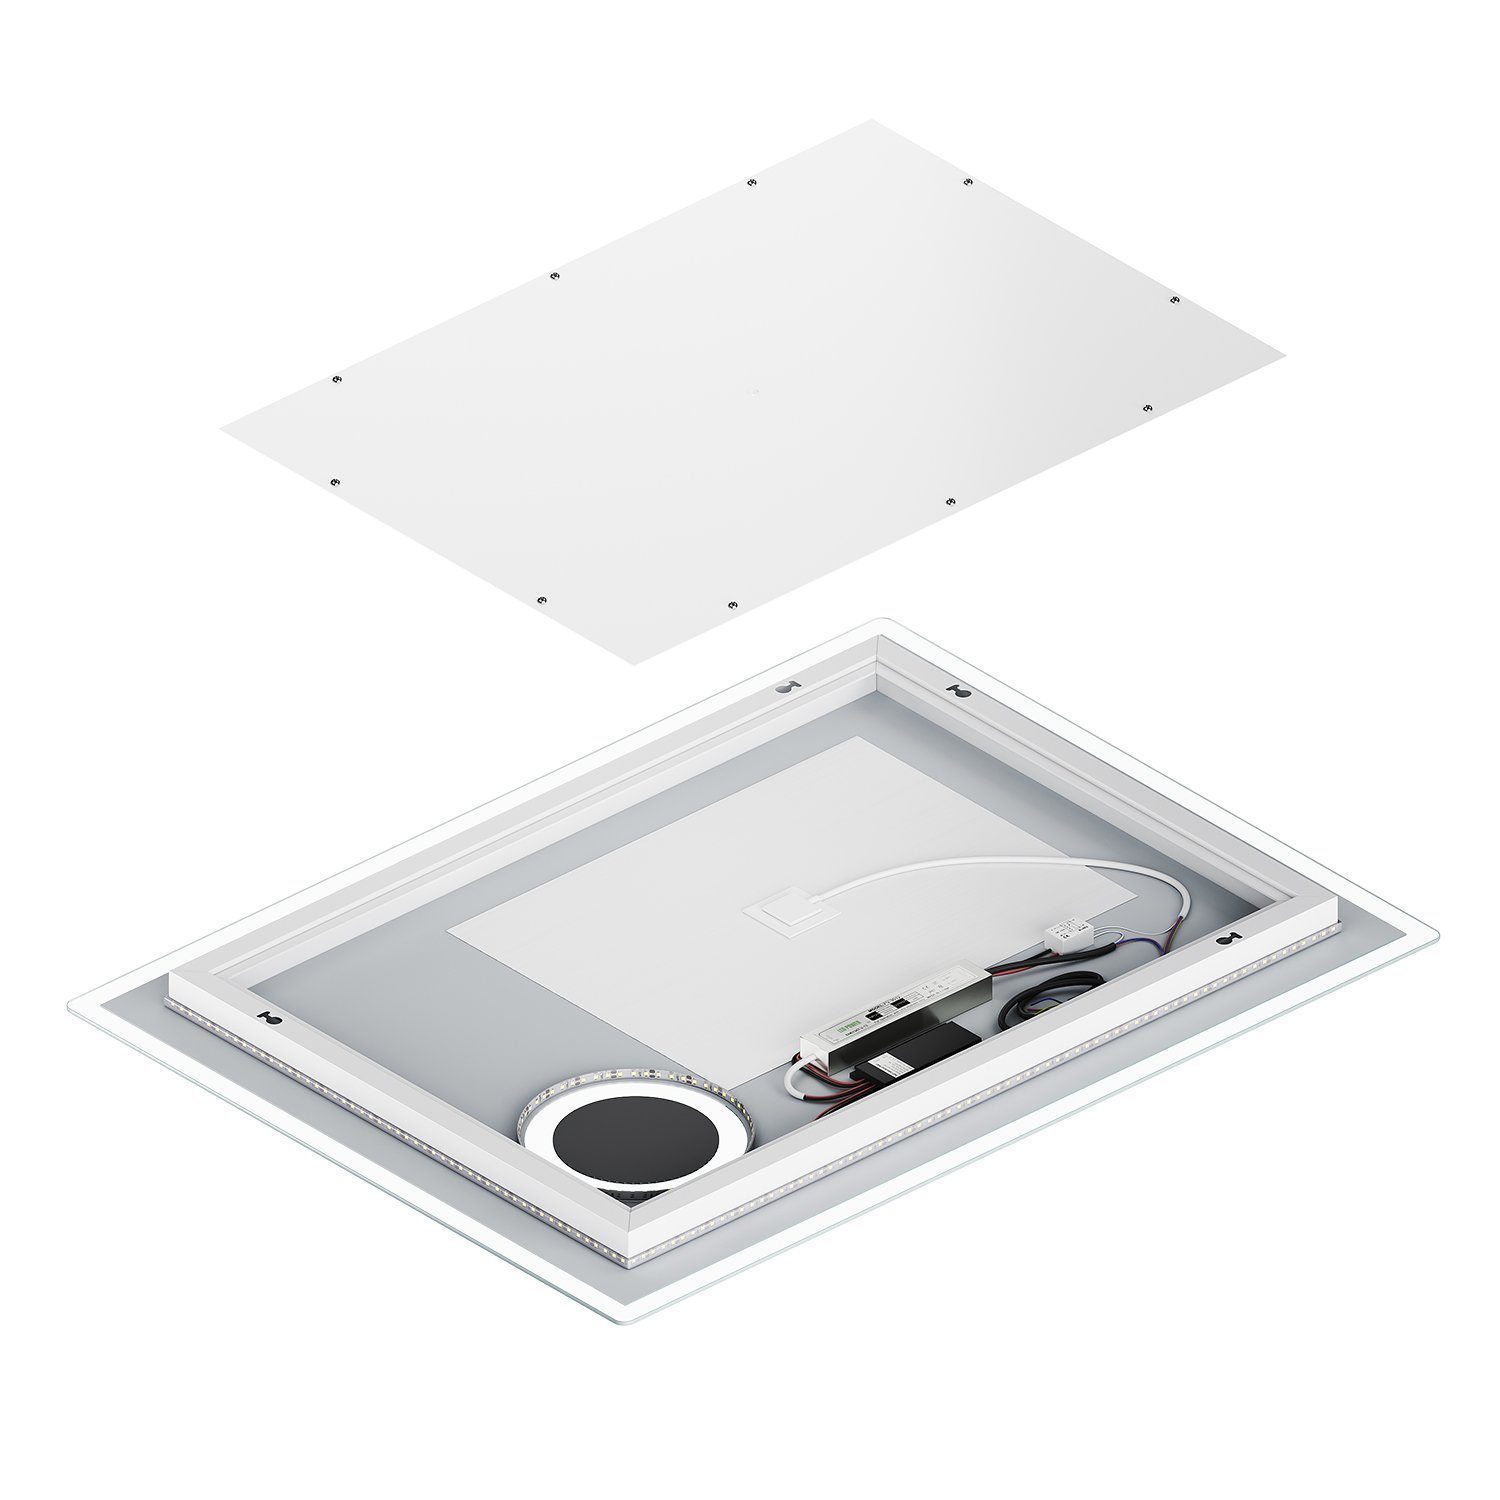 3-facher mit SONNI mit LED Vergrößerung,100/80cmx60cm, Badezimmerspiegel Badspiegel